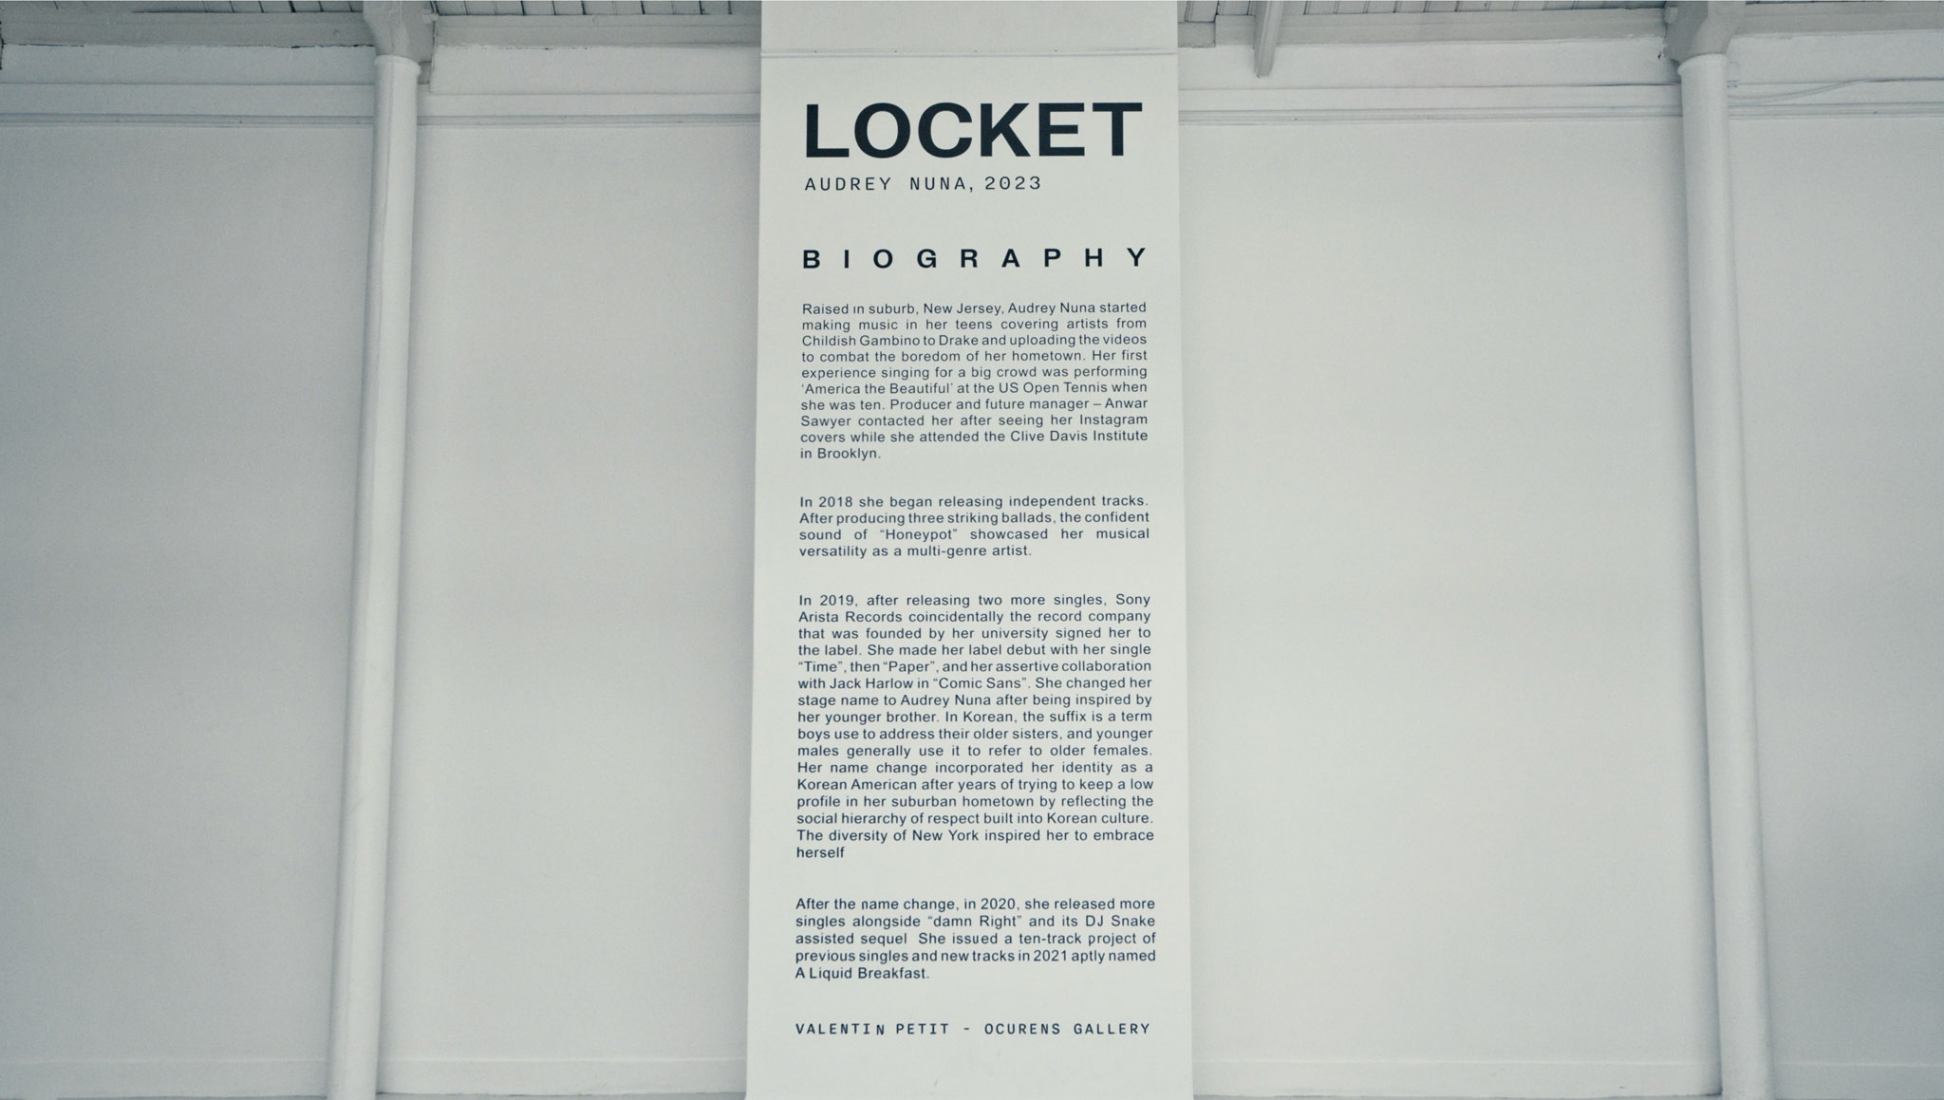 Audrey Nuna lanzó su nuevo sencillo “Locket”.